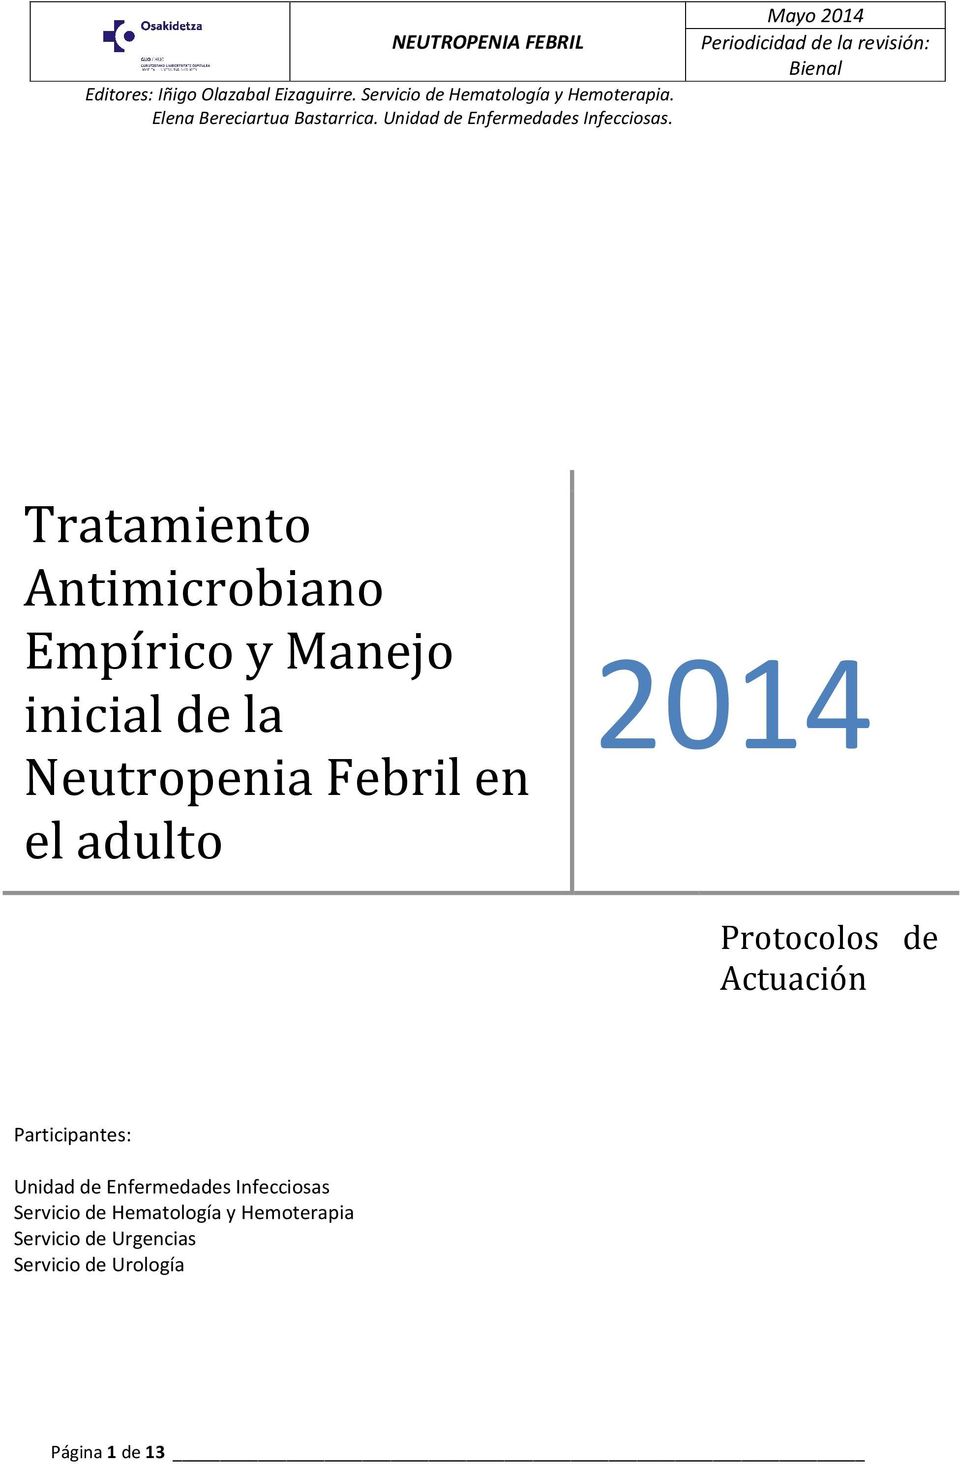 Mayo 2014 Periodicidad de la revisión: Bienal Tratamiento Antimicrobiano Empírico y Manejo inicial de la Neutropenia